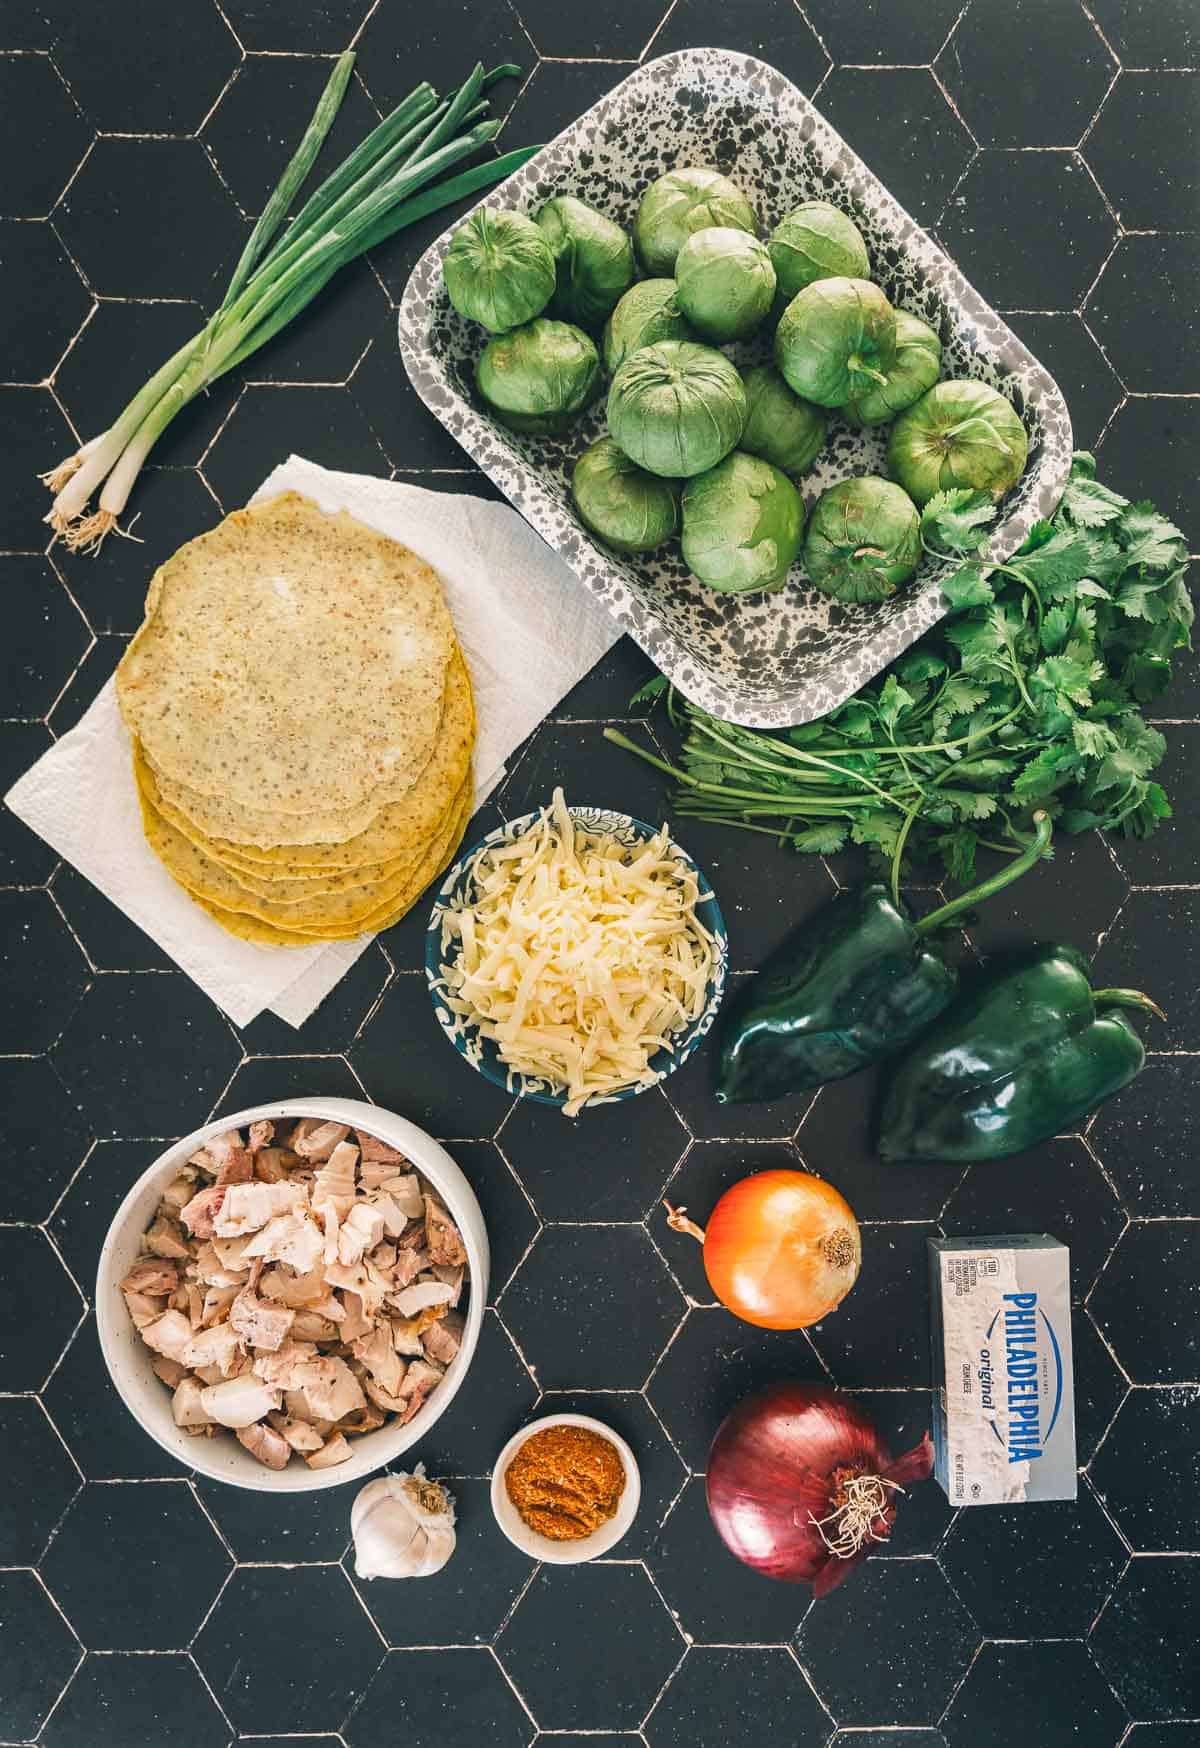 Ingredients for enchiladas verdes.